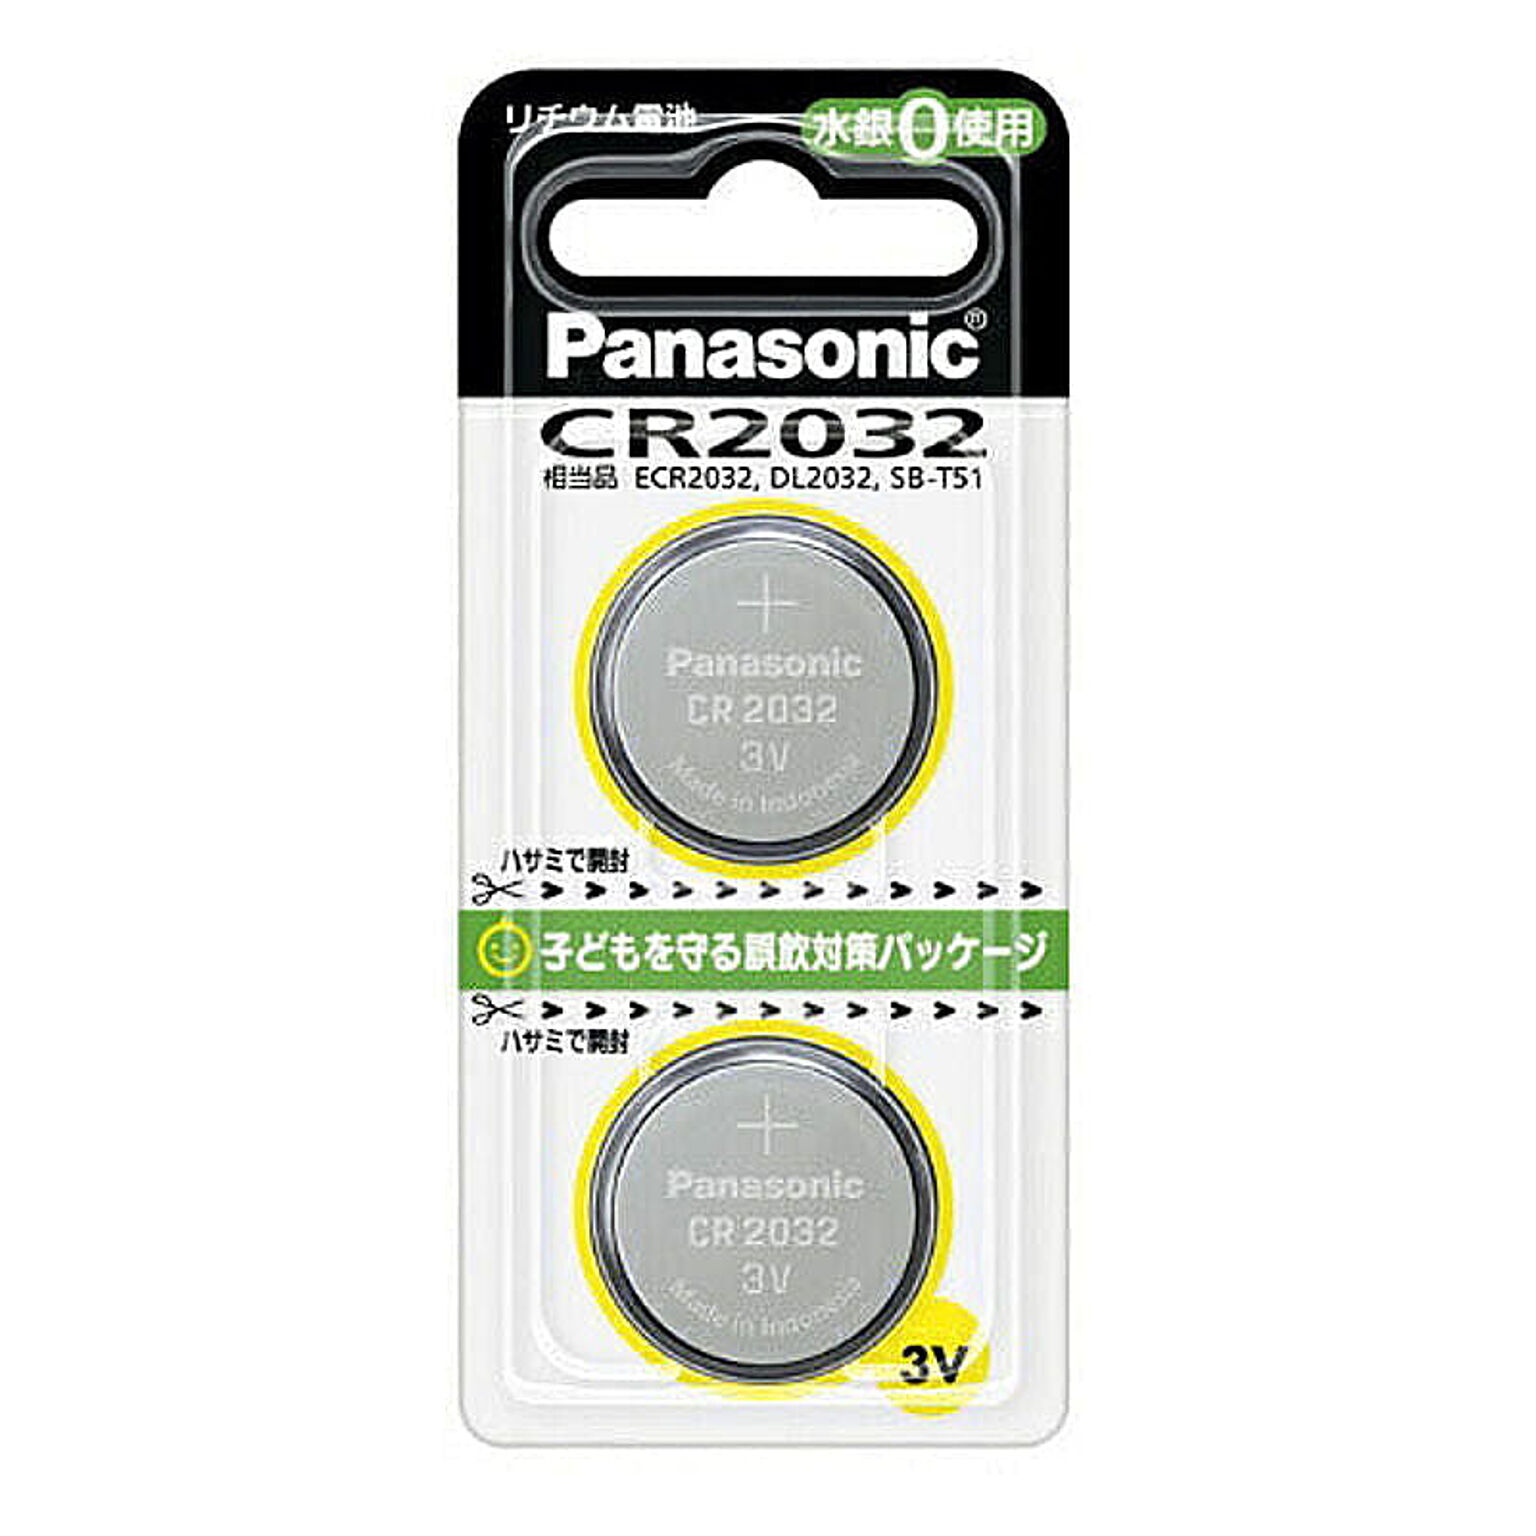 パナソニック Panasonic コイン形リチウム電池 ボタン電池 3V 2個入 CR-2032/2P CR2032 管理No.  4984824364127 通販 RoomClipショッピング